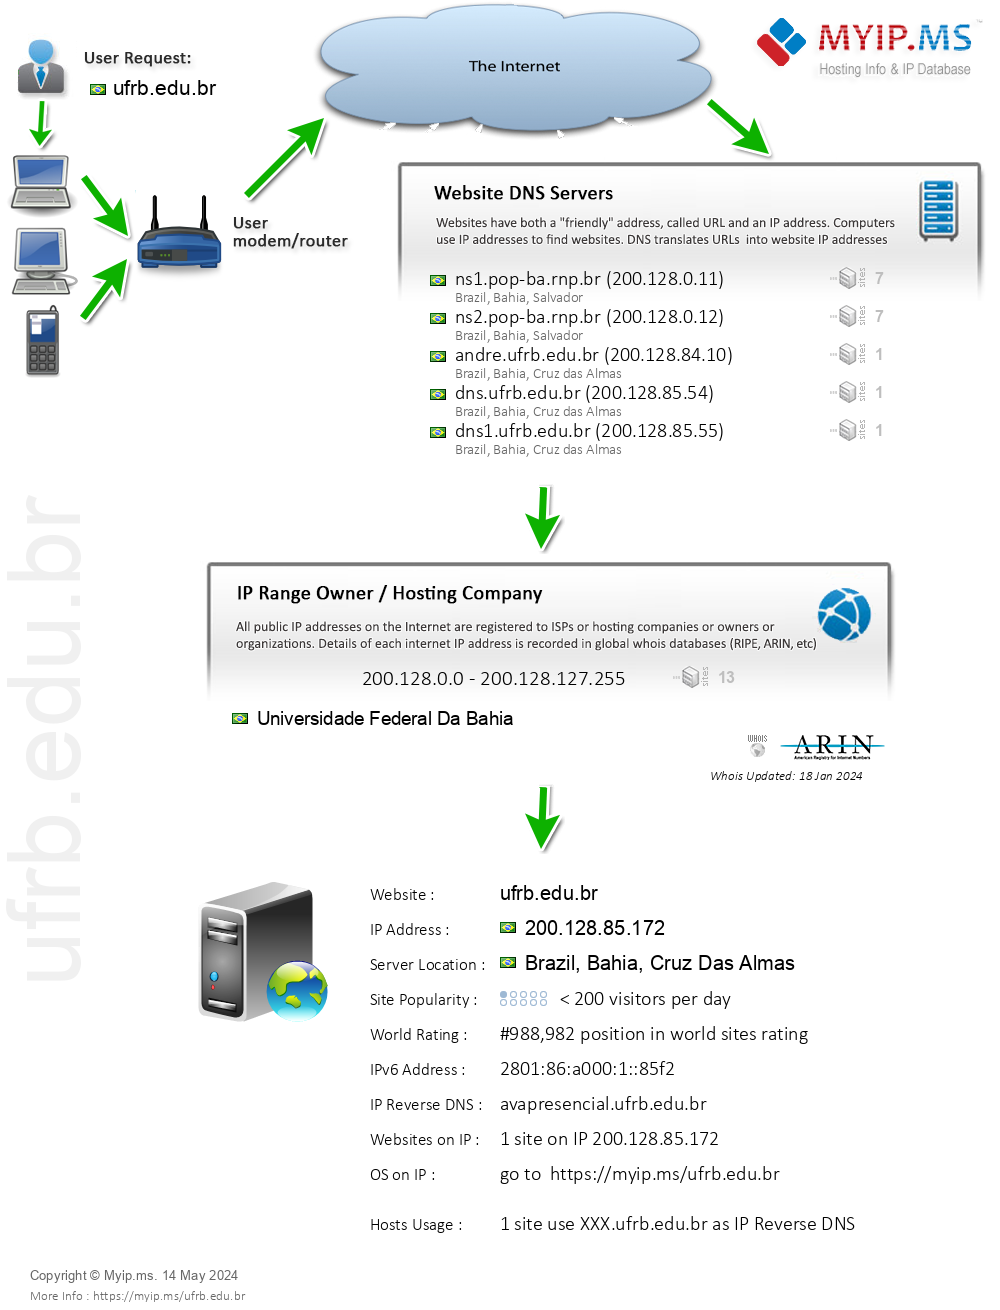 Ufrb.edu.br - Website Hosting Visual IP Diagram